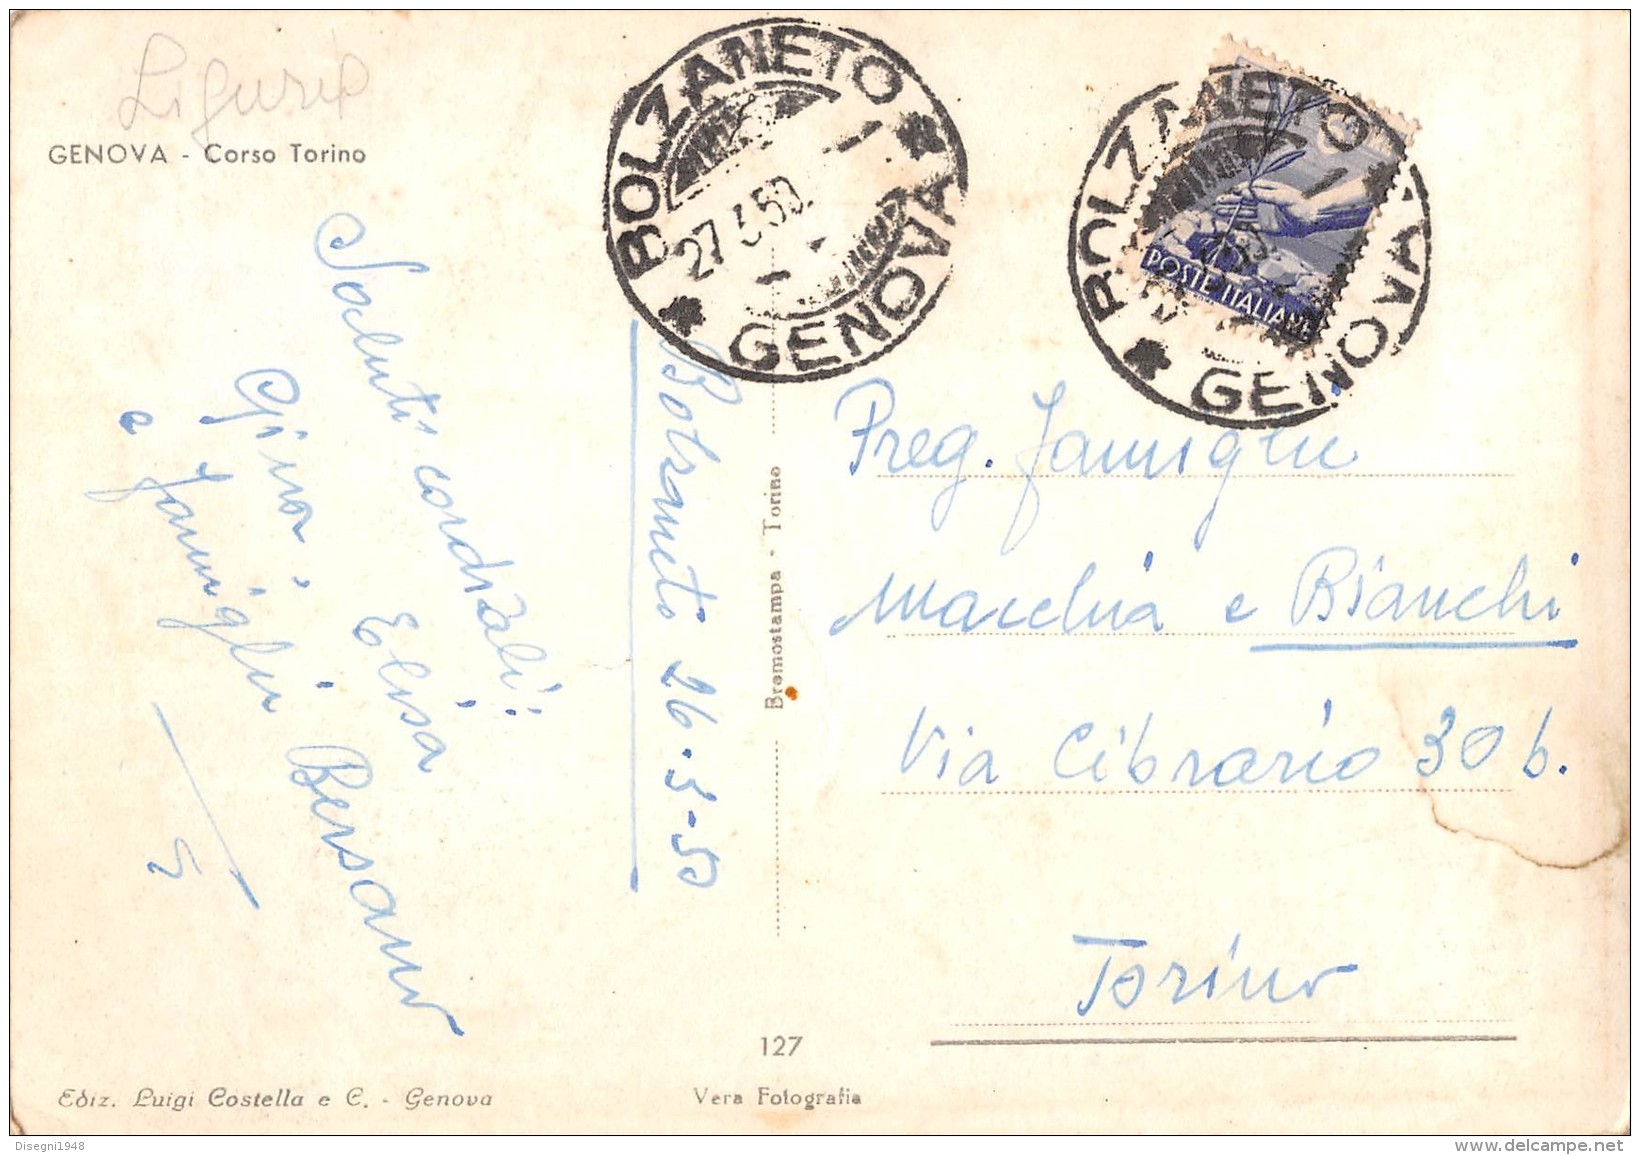 06377 "GENOVA - CORSO TORINO" ANIMATA, TRAMWAY.  CART. ILL. ORIG. SPEDITA 1950 - Genova